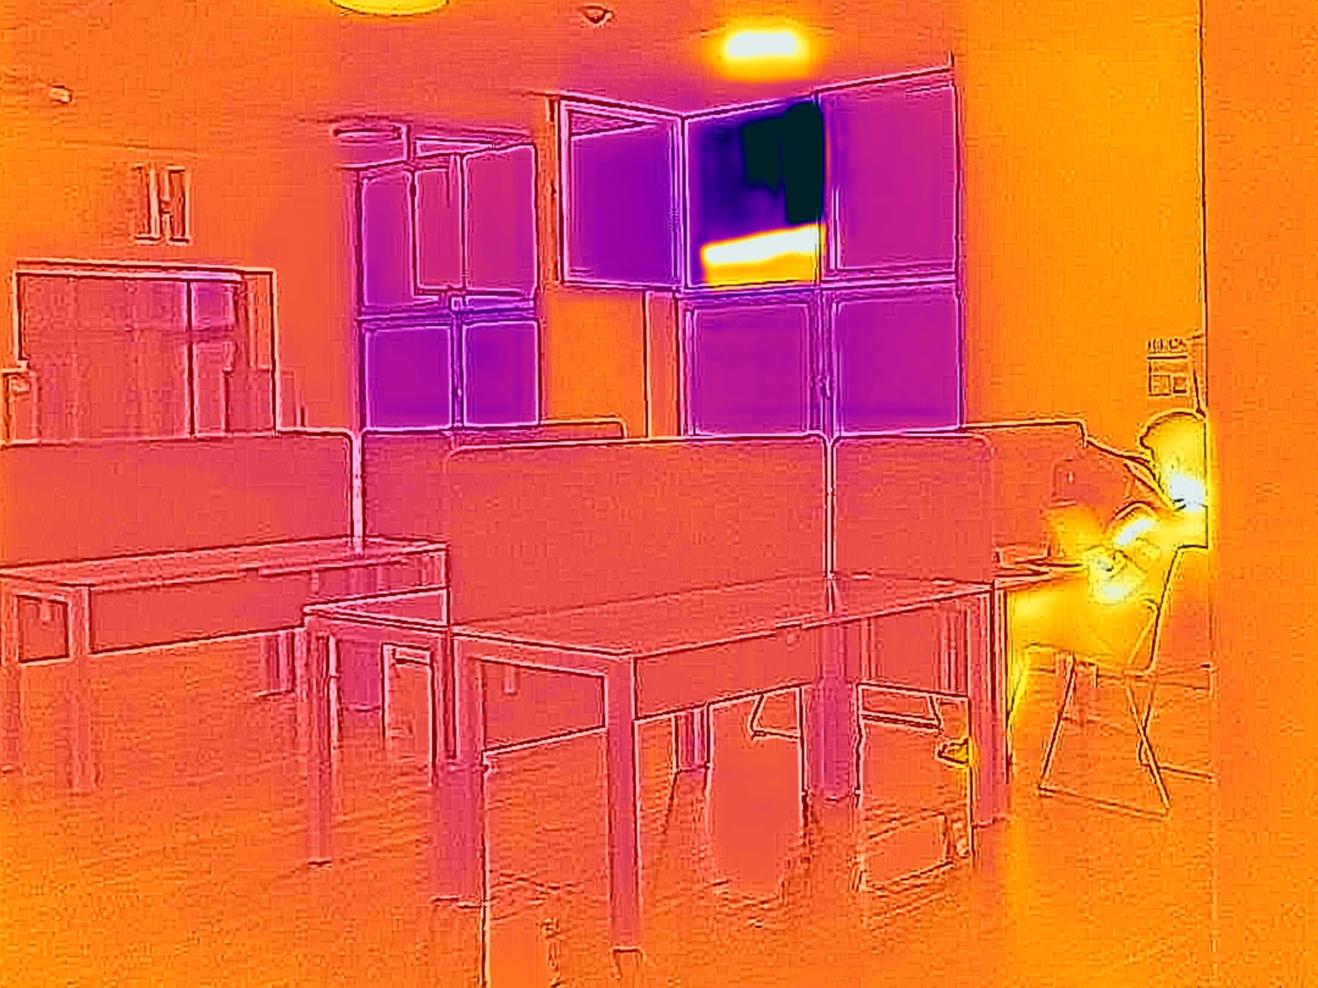 Thermografie-Aufnahme im Treppenhaus der HfMDK mit Arbeitsplätzen und einem offenen Fenster.